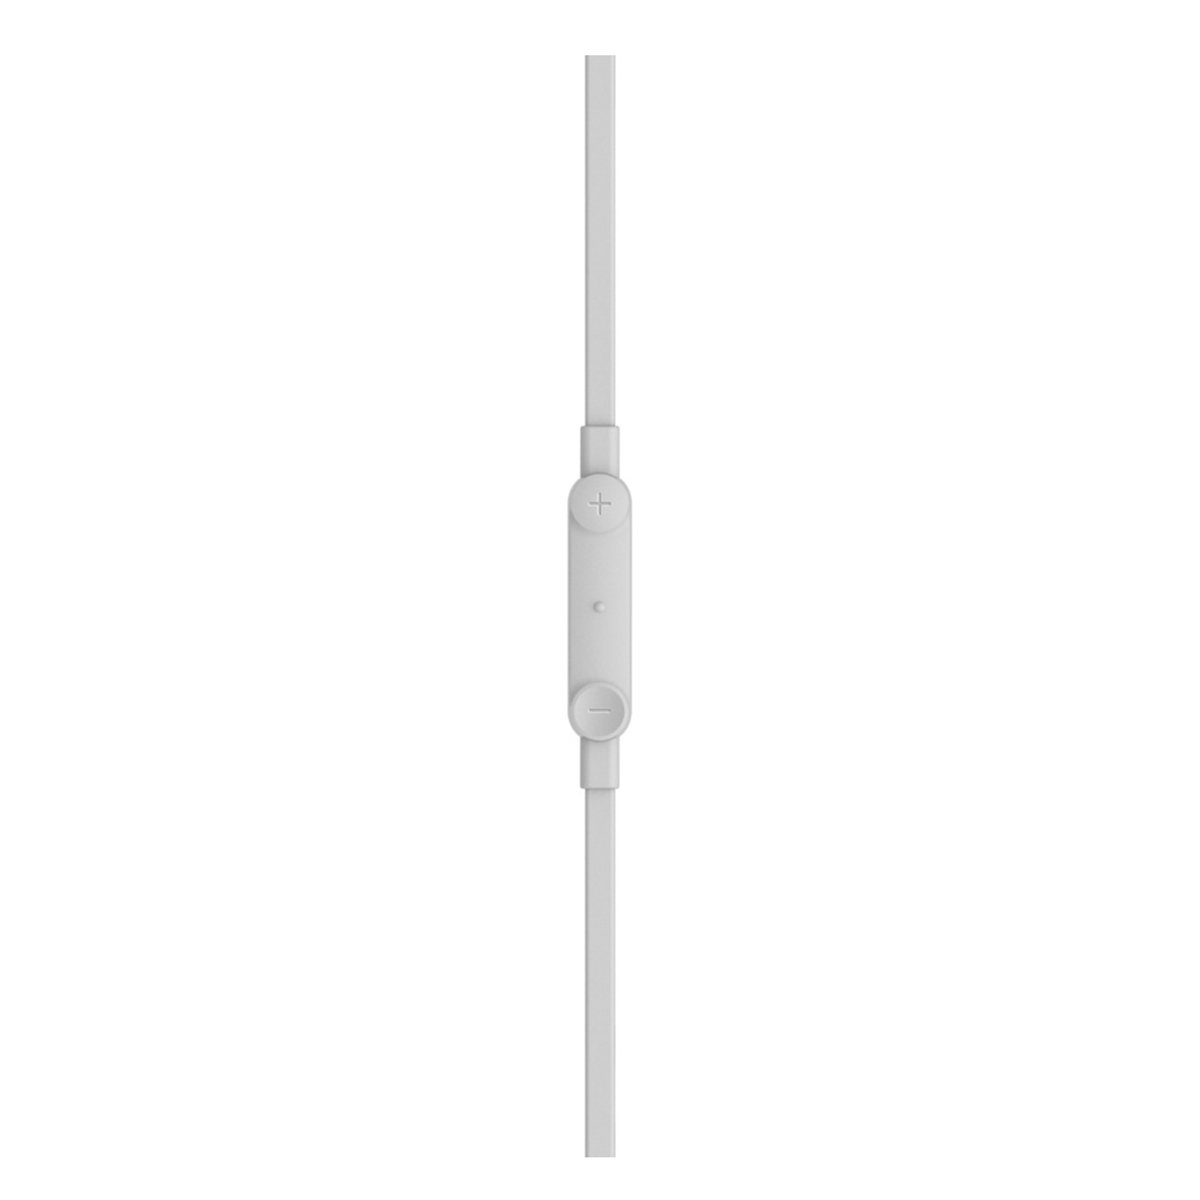 سماعات رأس لايتنج داخل الأذن مع المايكروفون من بلكين روكستار MFI - اللون أبيض - G3H001BTWHT